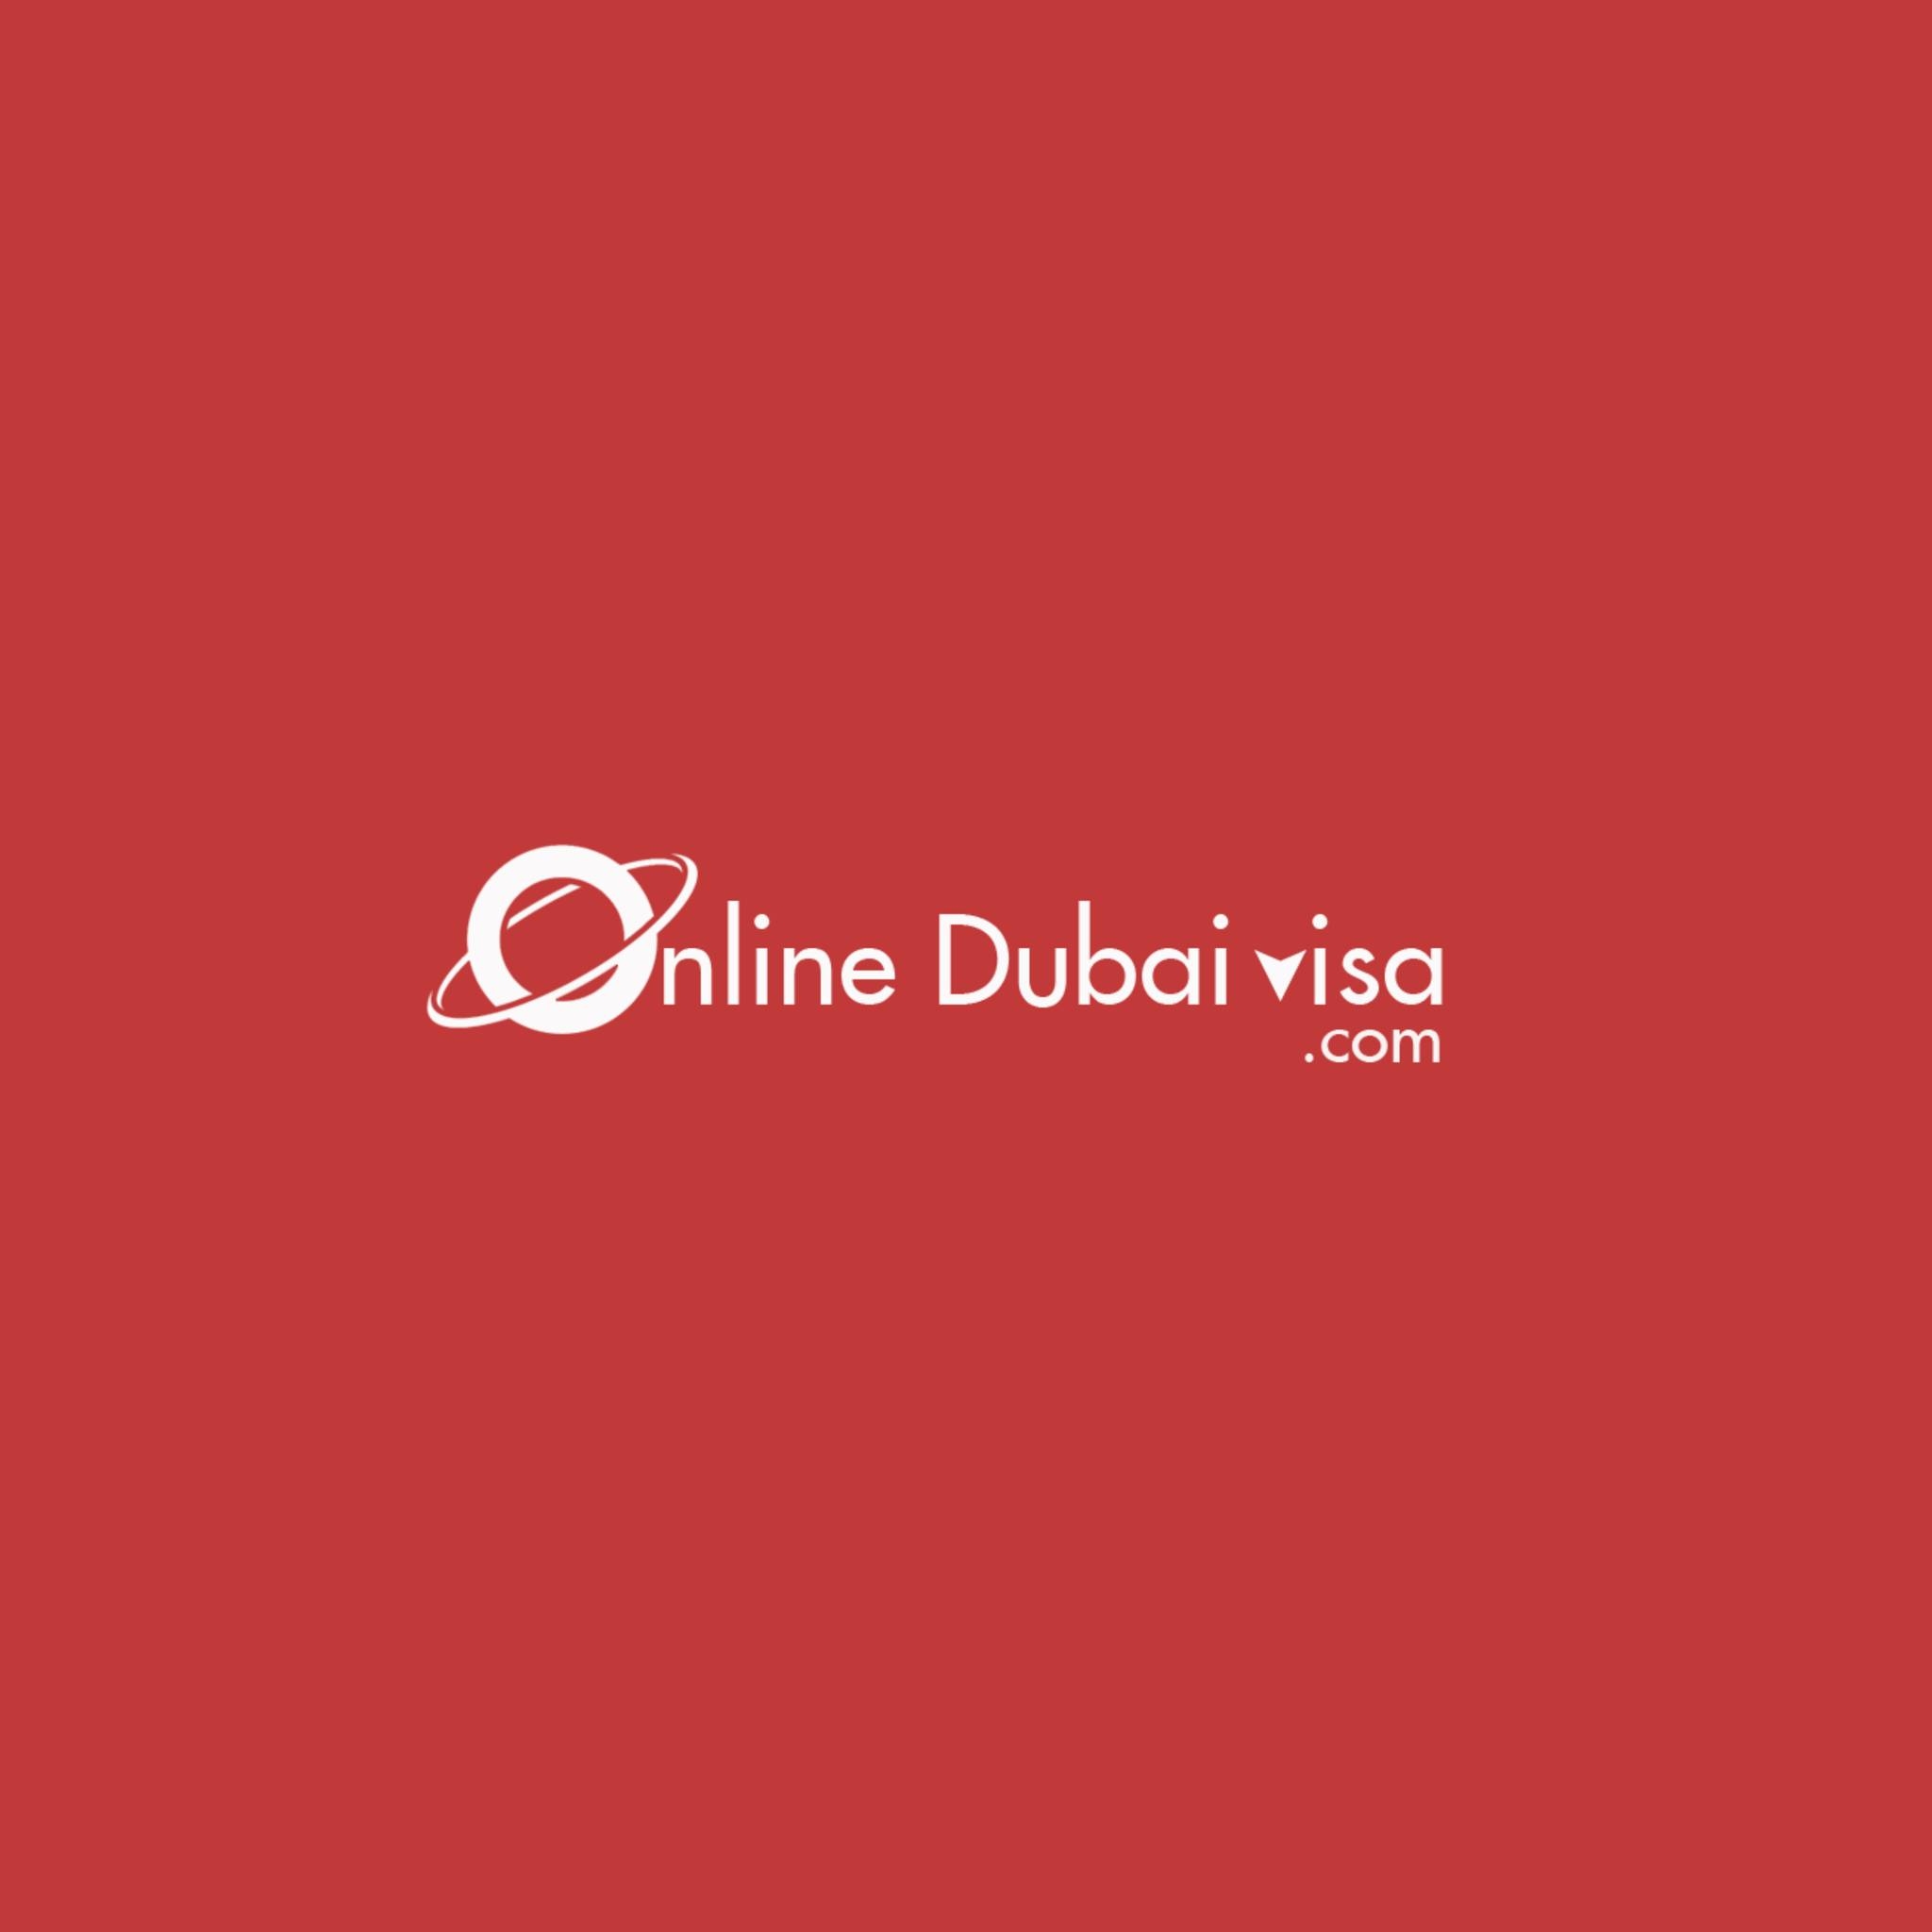  Best Online Dubai Visa Provider